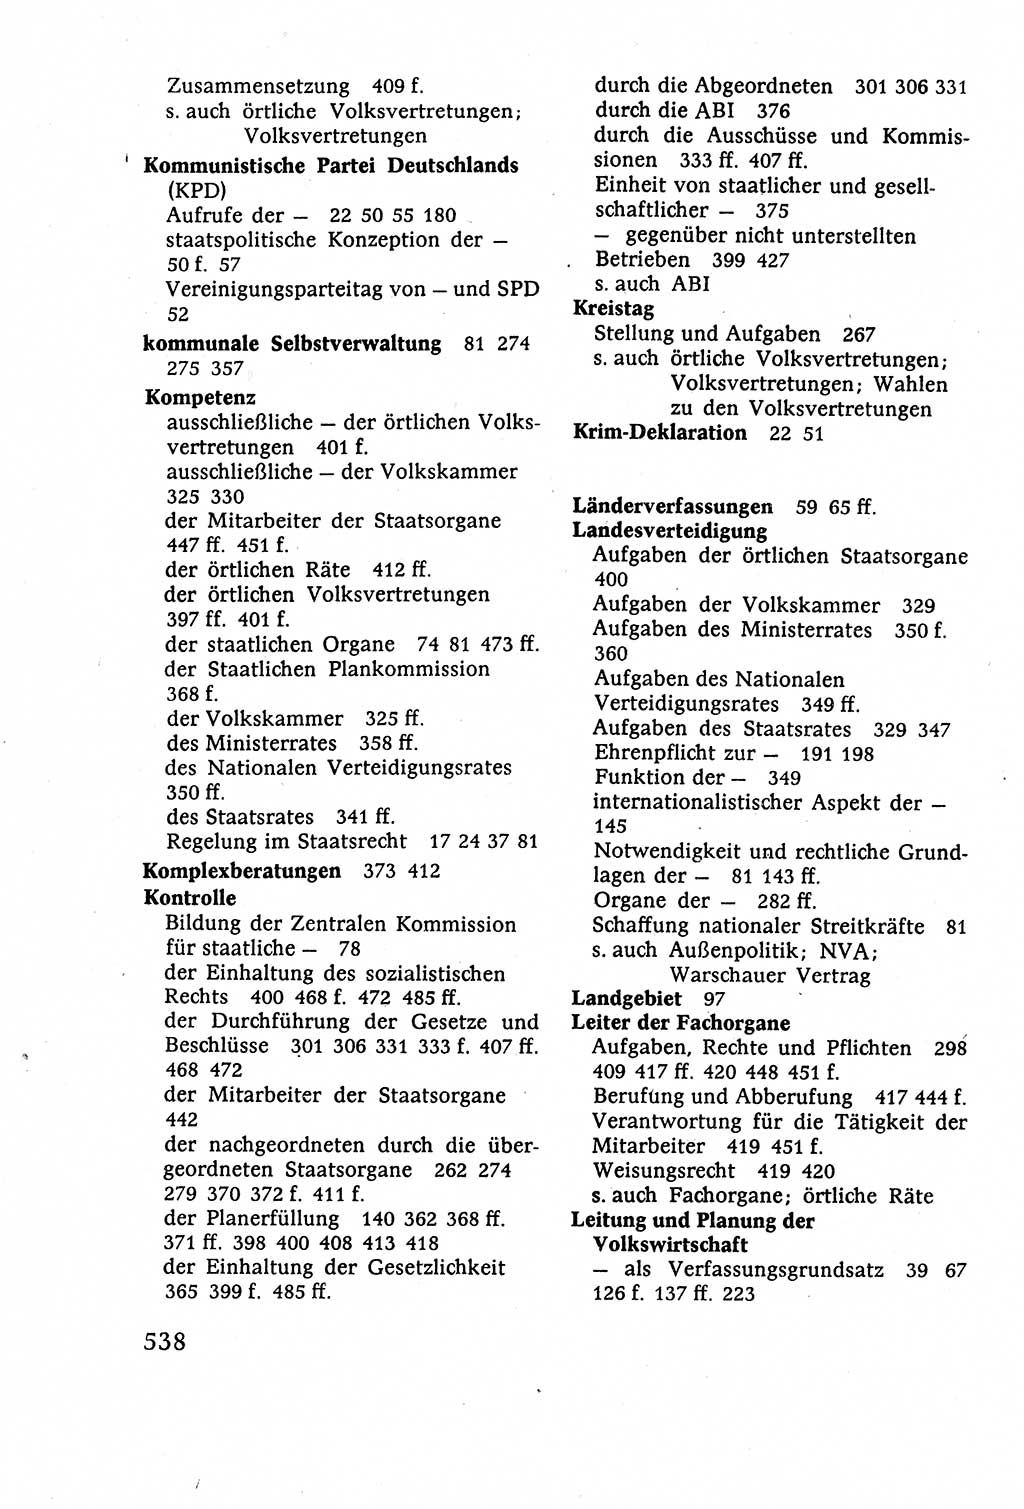 Staatsrecht der DDR (Deutsche Demokratische Republik), Lehrbuch 1977, Seite 538 (St.-R. DDR Lb. 1977, S. 538)